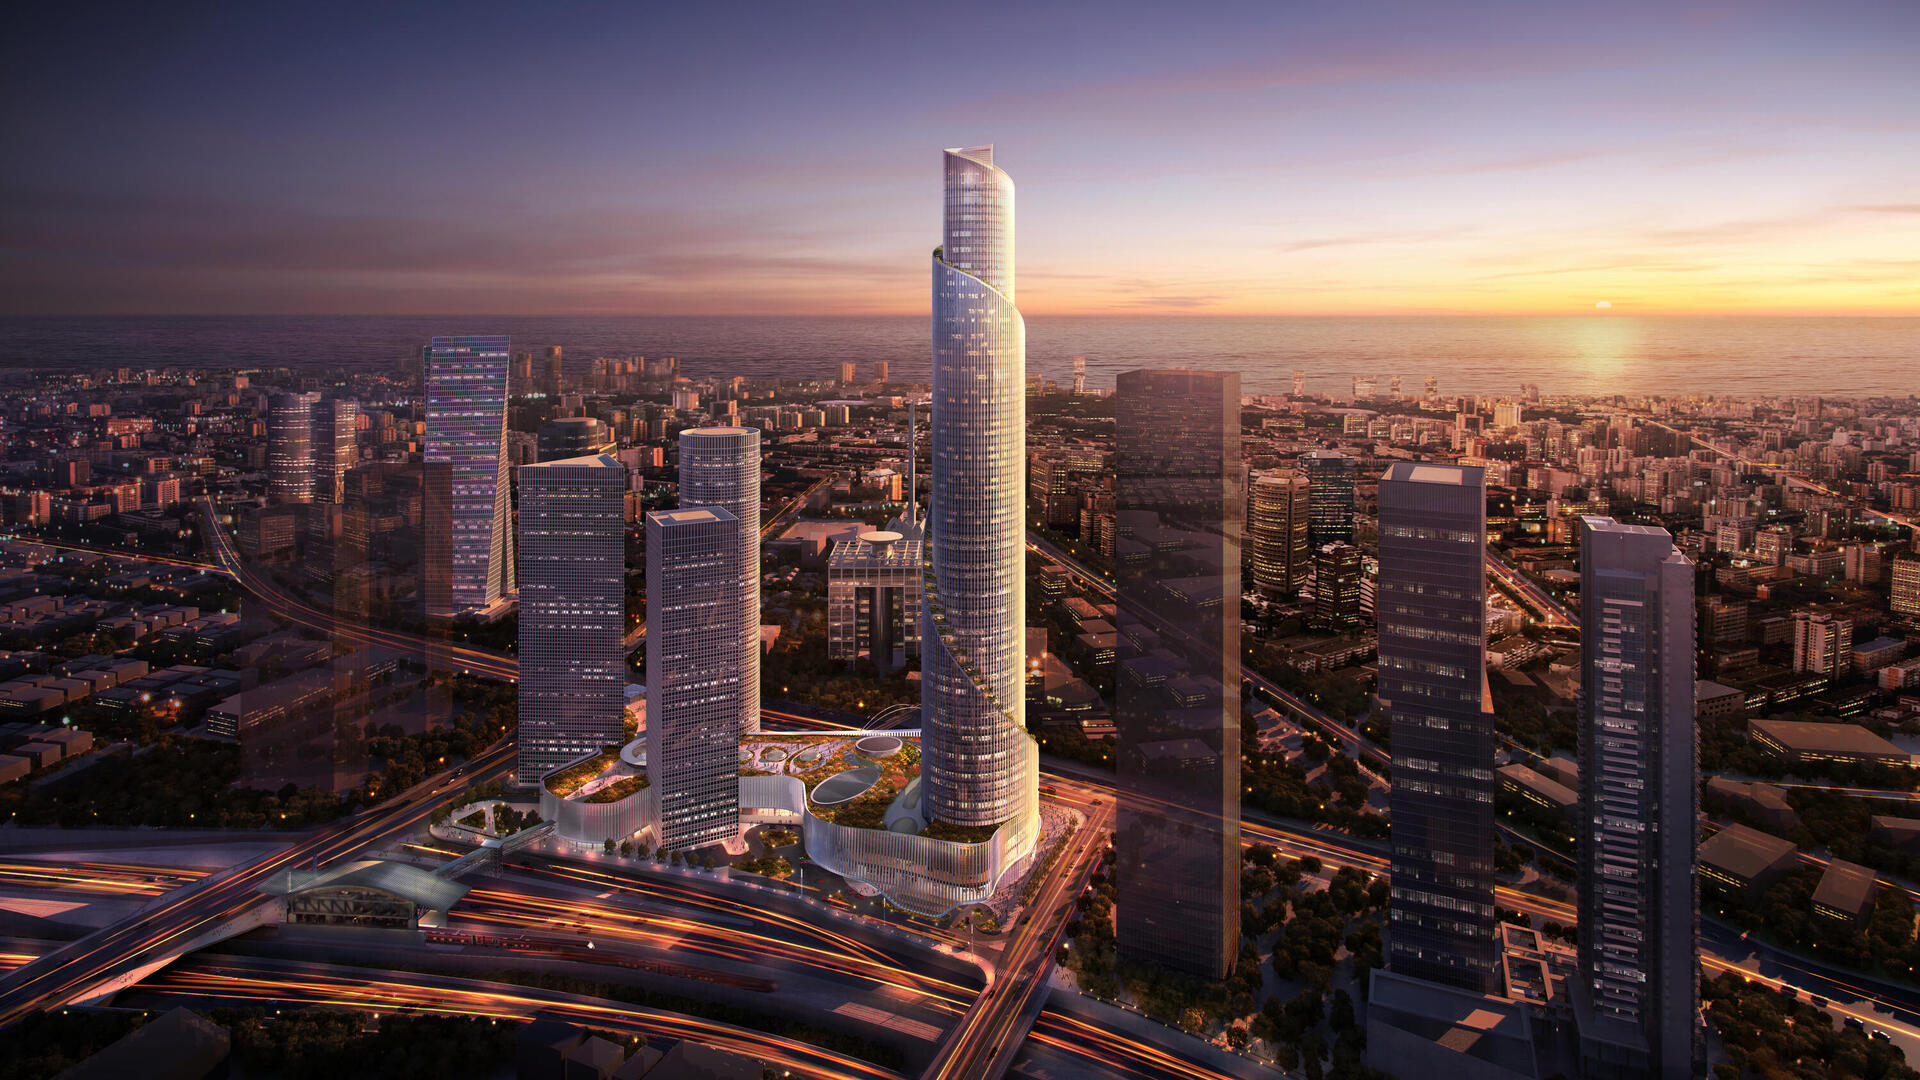 מרכז עזריאלי תל אביב בתוספת מגדל הספירלה המתוכנן ב-2026